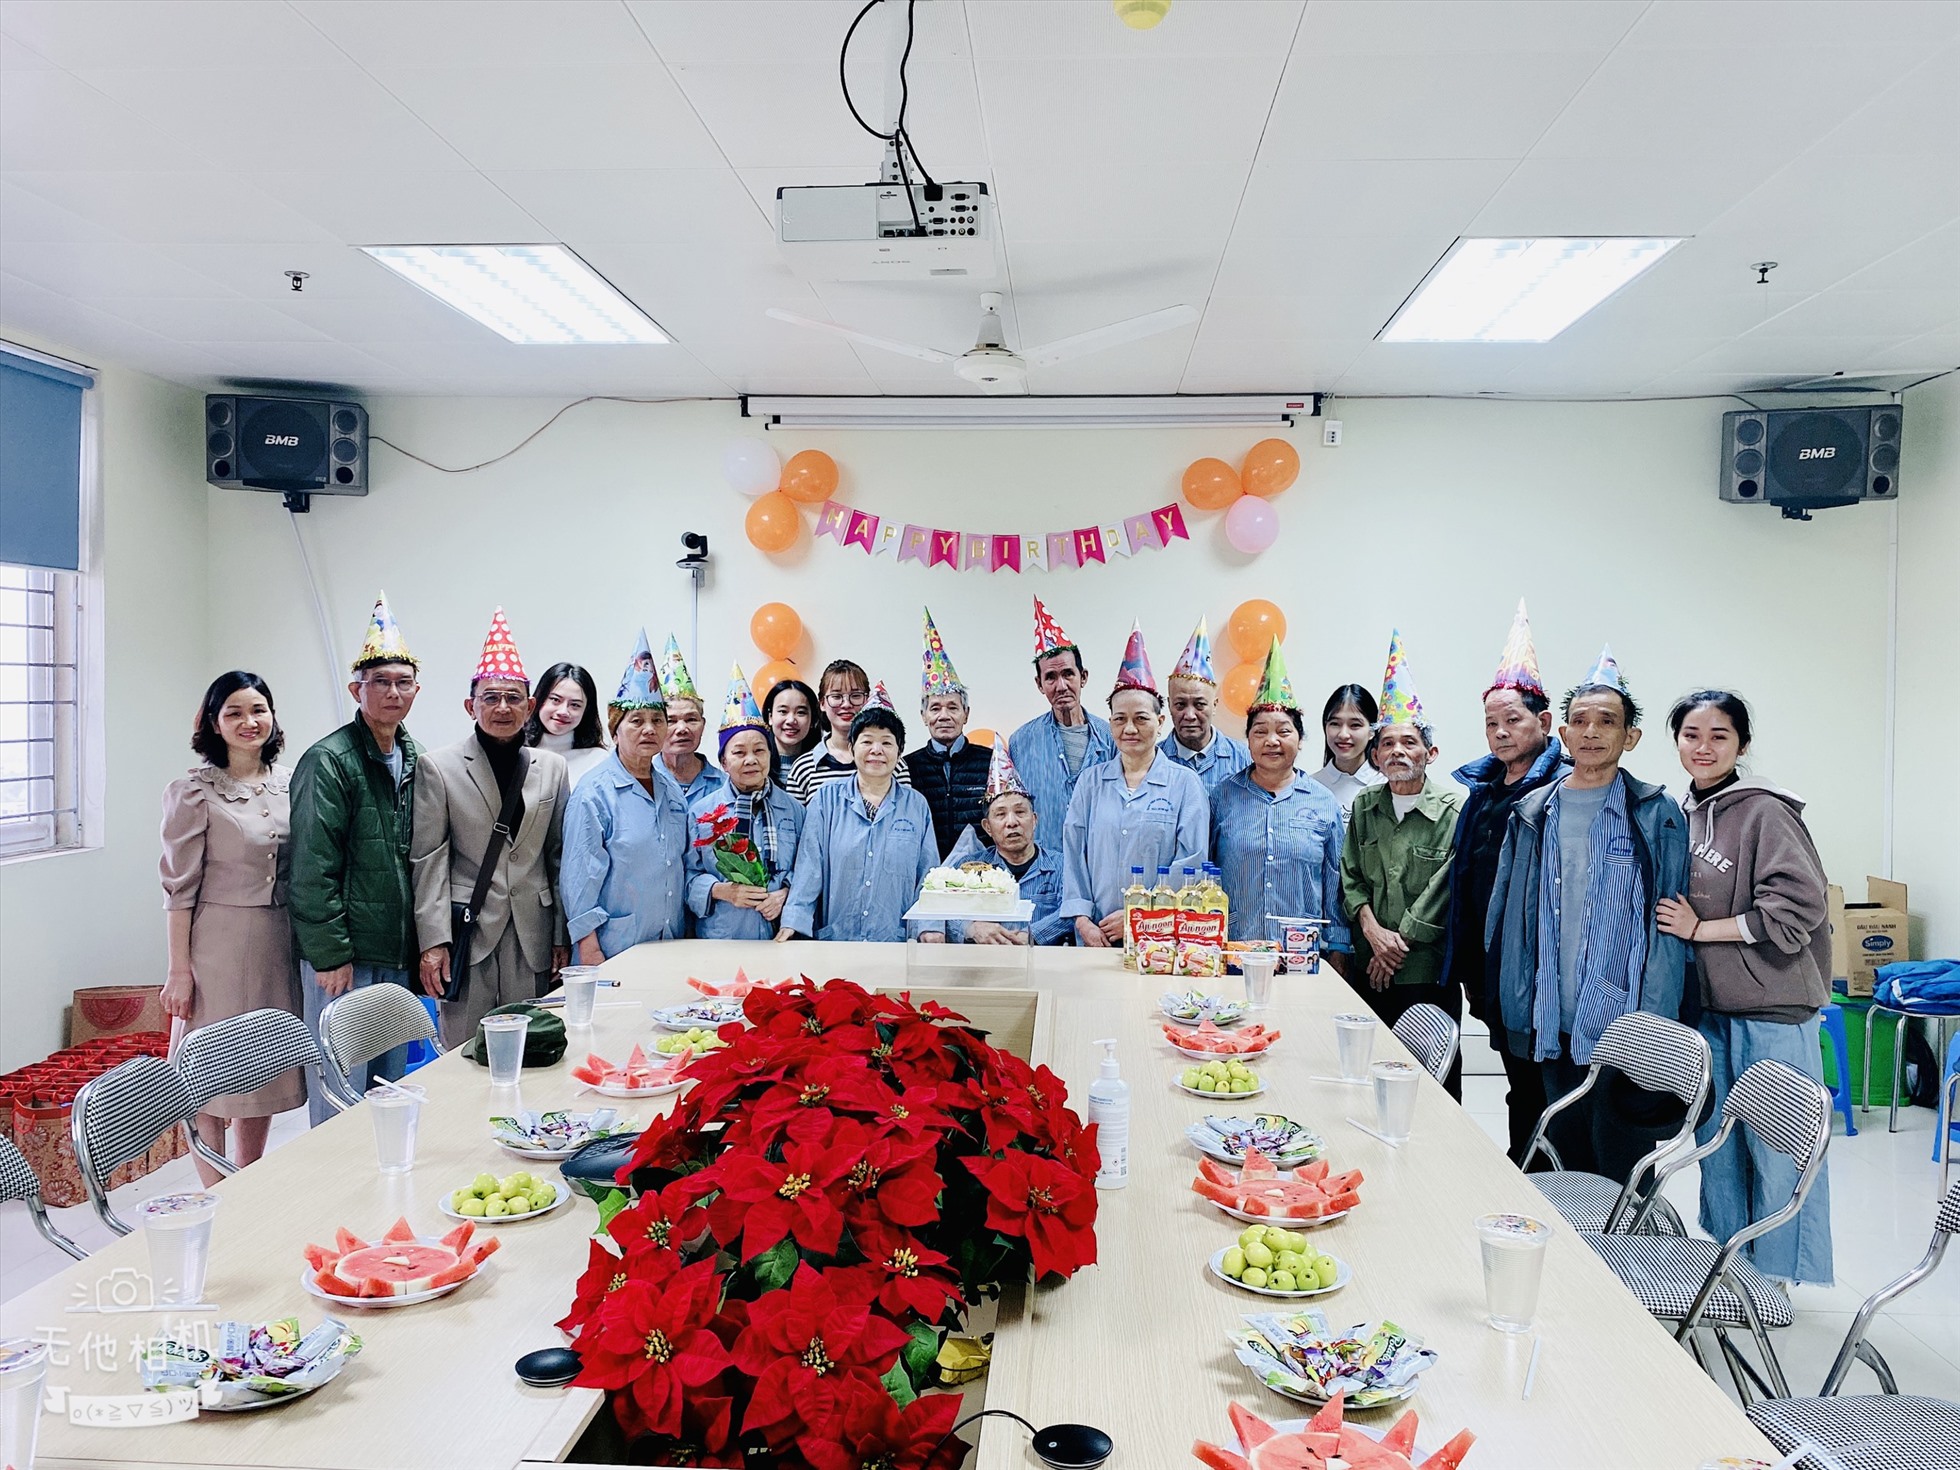 Chương trình “Bánh sinh nhật yêu thương” được thực hiện từ năm 2020, mang lại niềm vui cho hàng trăm lượt bệnh nhân ung thư. Ảnh: Sống Sẻ Chia